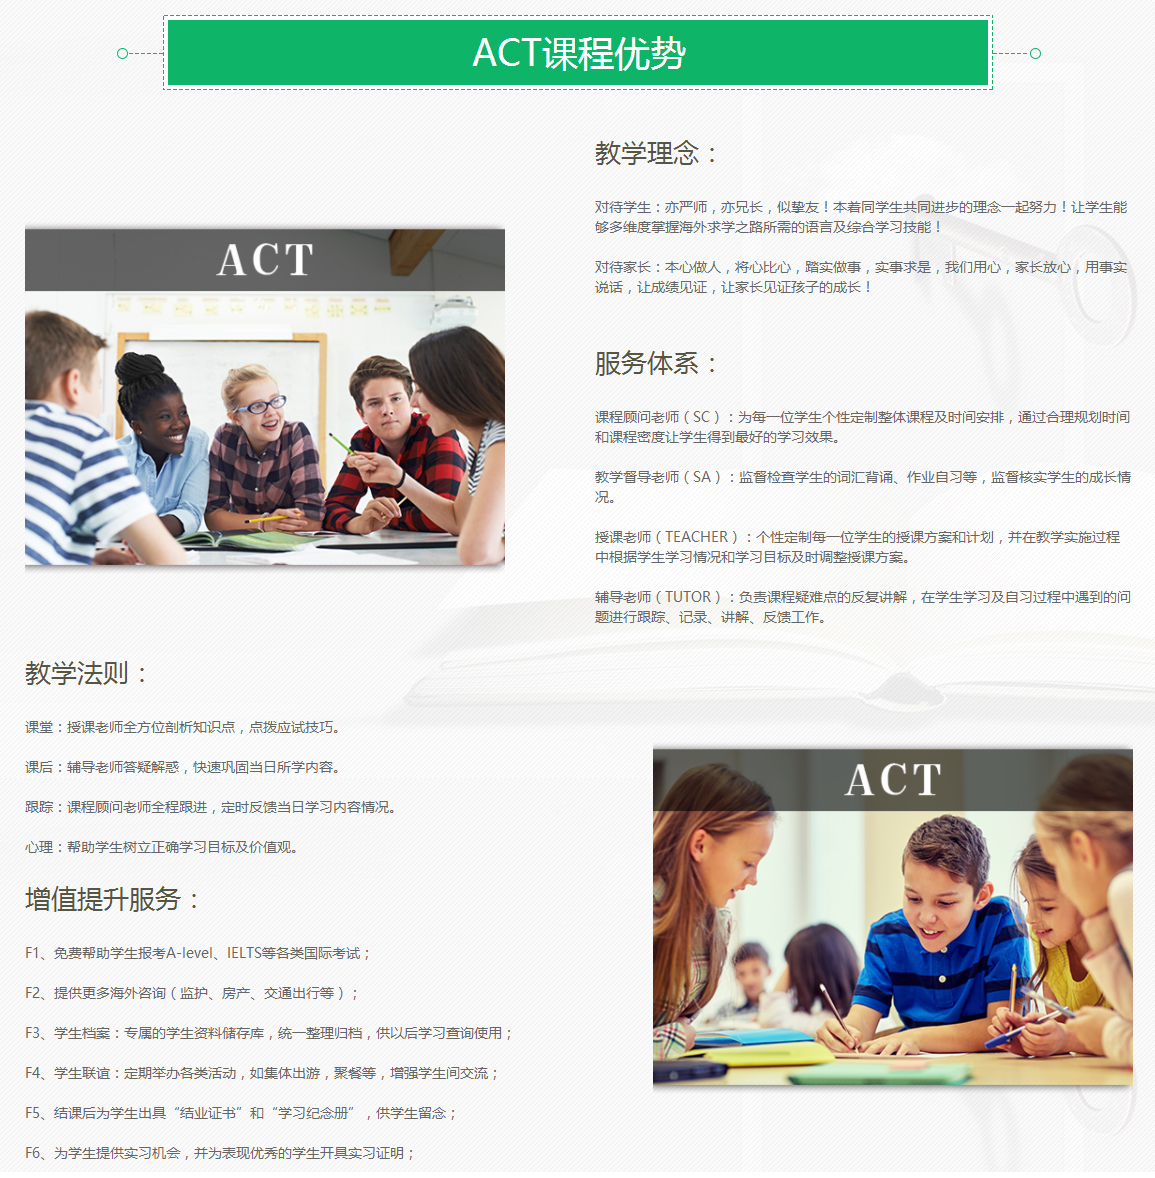 北京A加未来ACT培训课程 